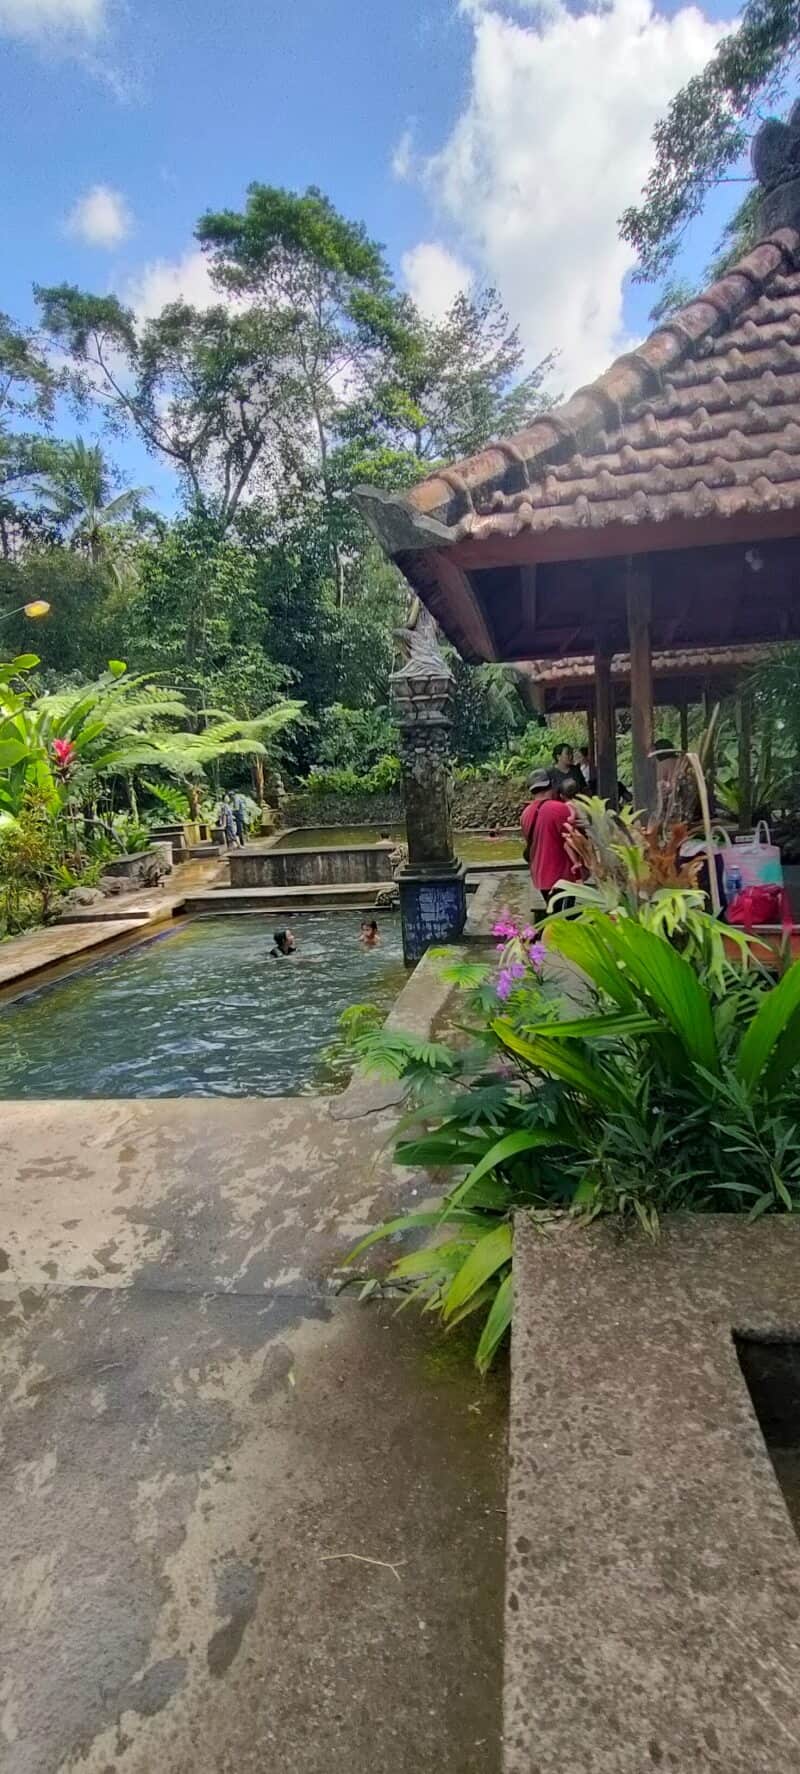 Wisata Bali Yang Recomended